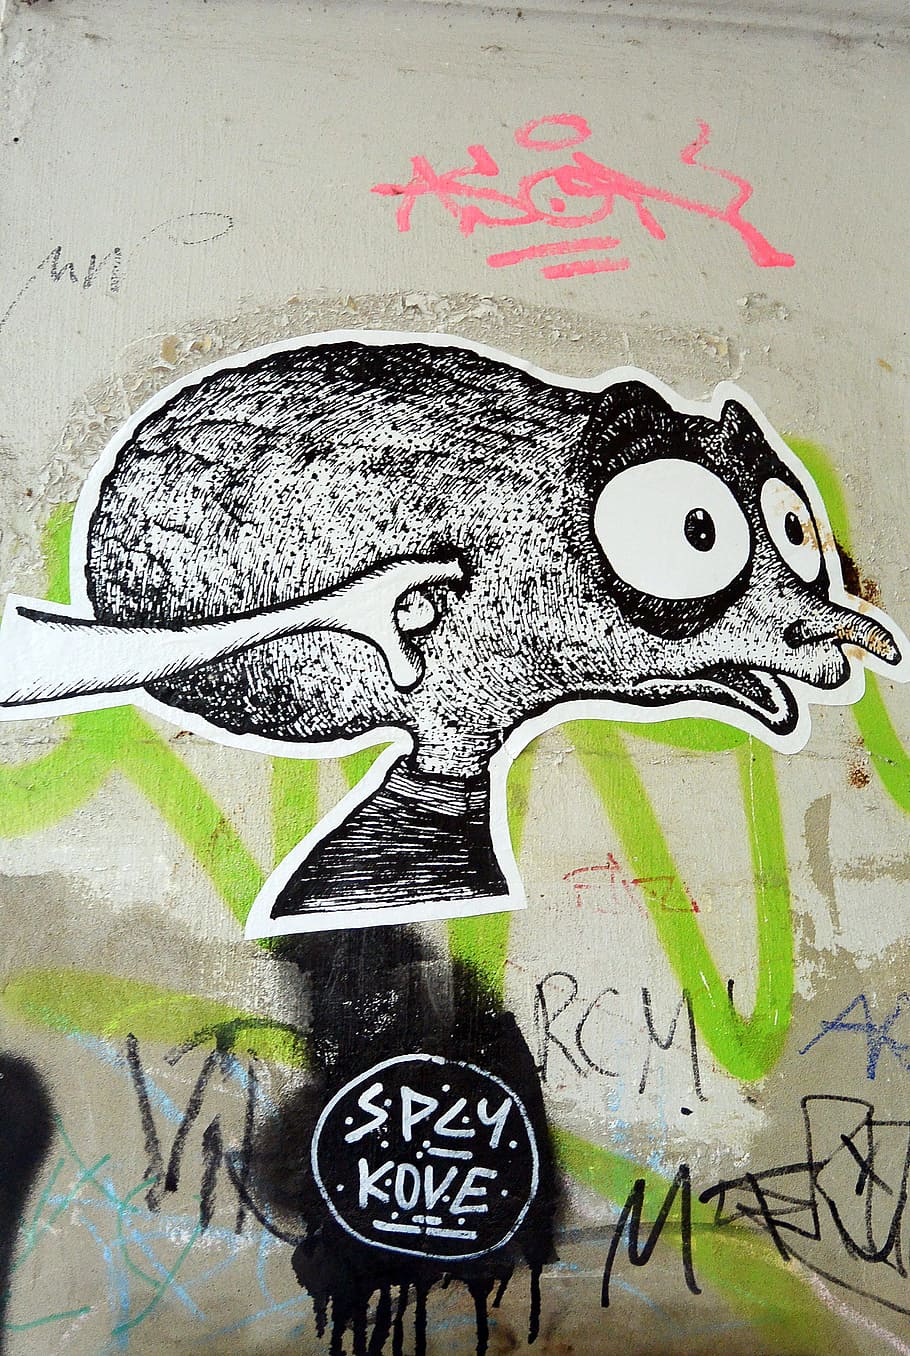 Graffiti, Street Art, Urban Art, Mural, art, spray, graffiti wall, facade, berlin, kreuzberg